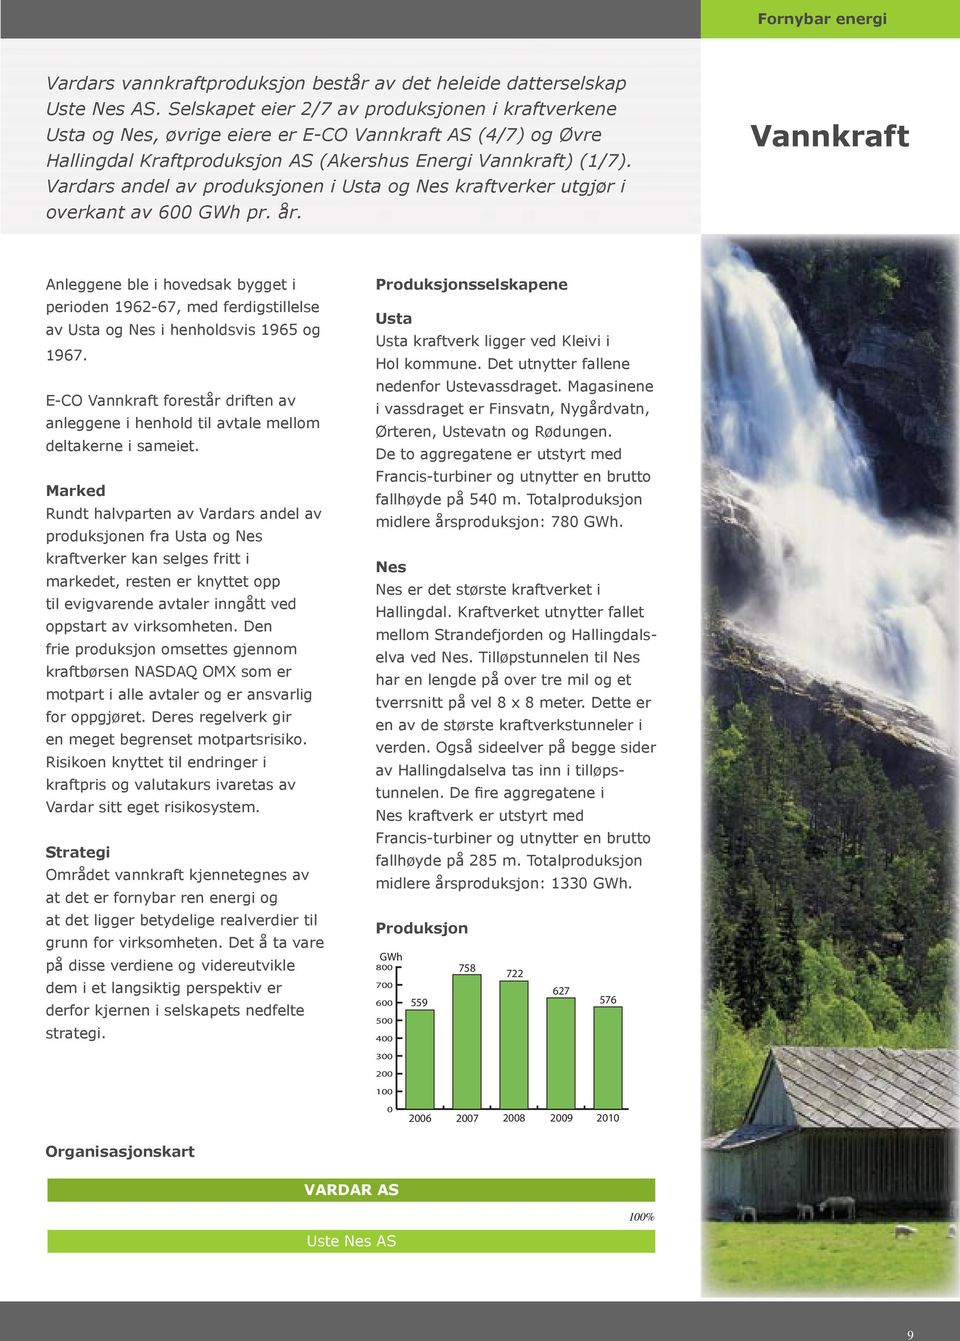 Vardars andel av produksjonen i Usta og Nes kraftverker utgjør i overkant av 600 GWh pr. år.